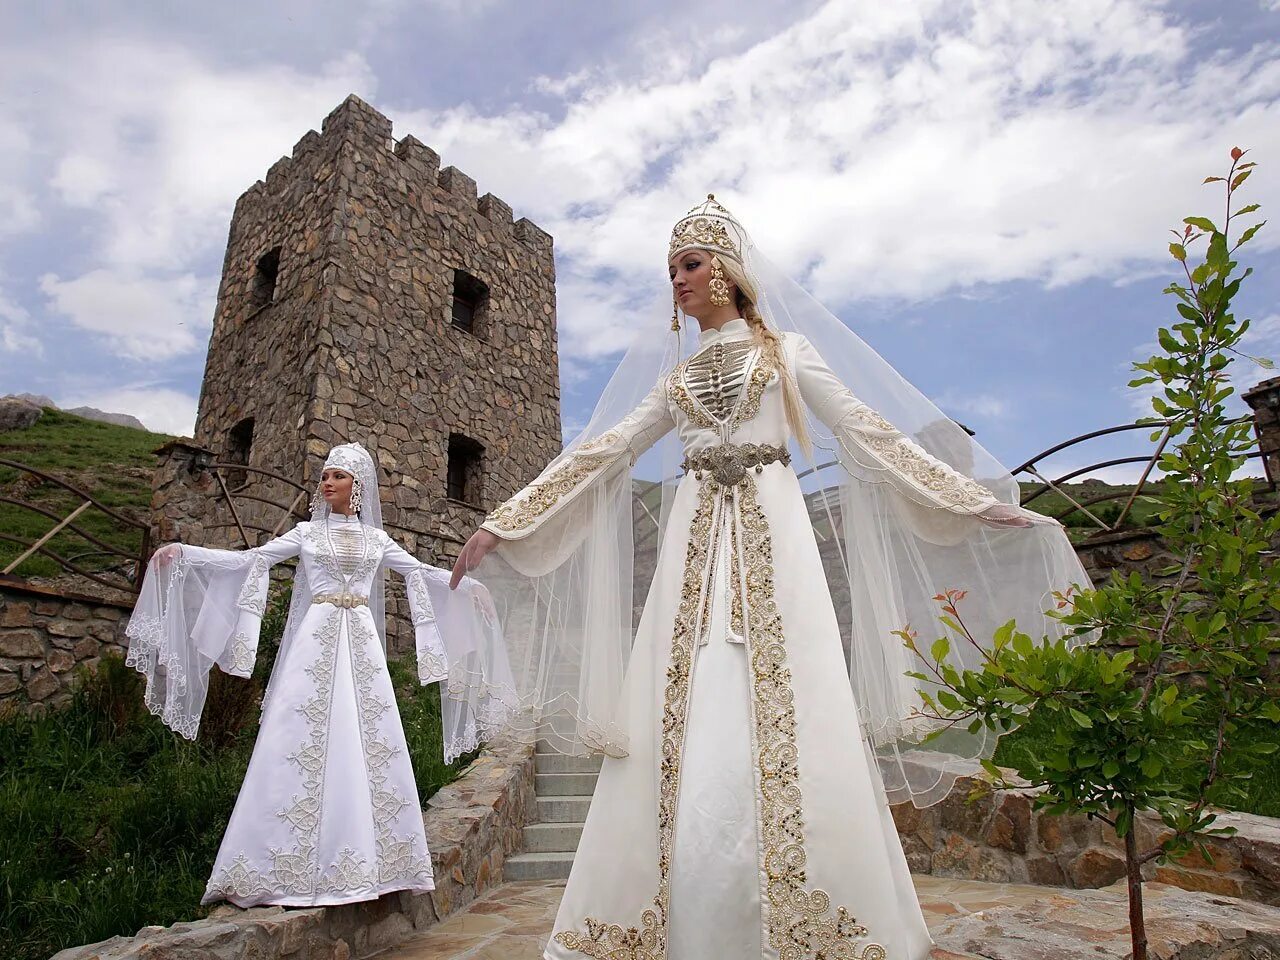 Костюм осетина. Национальное свадебное платье карачаевцев. Карачаевцы и балкарцы.